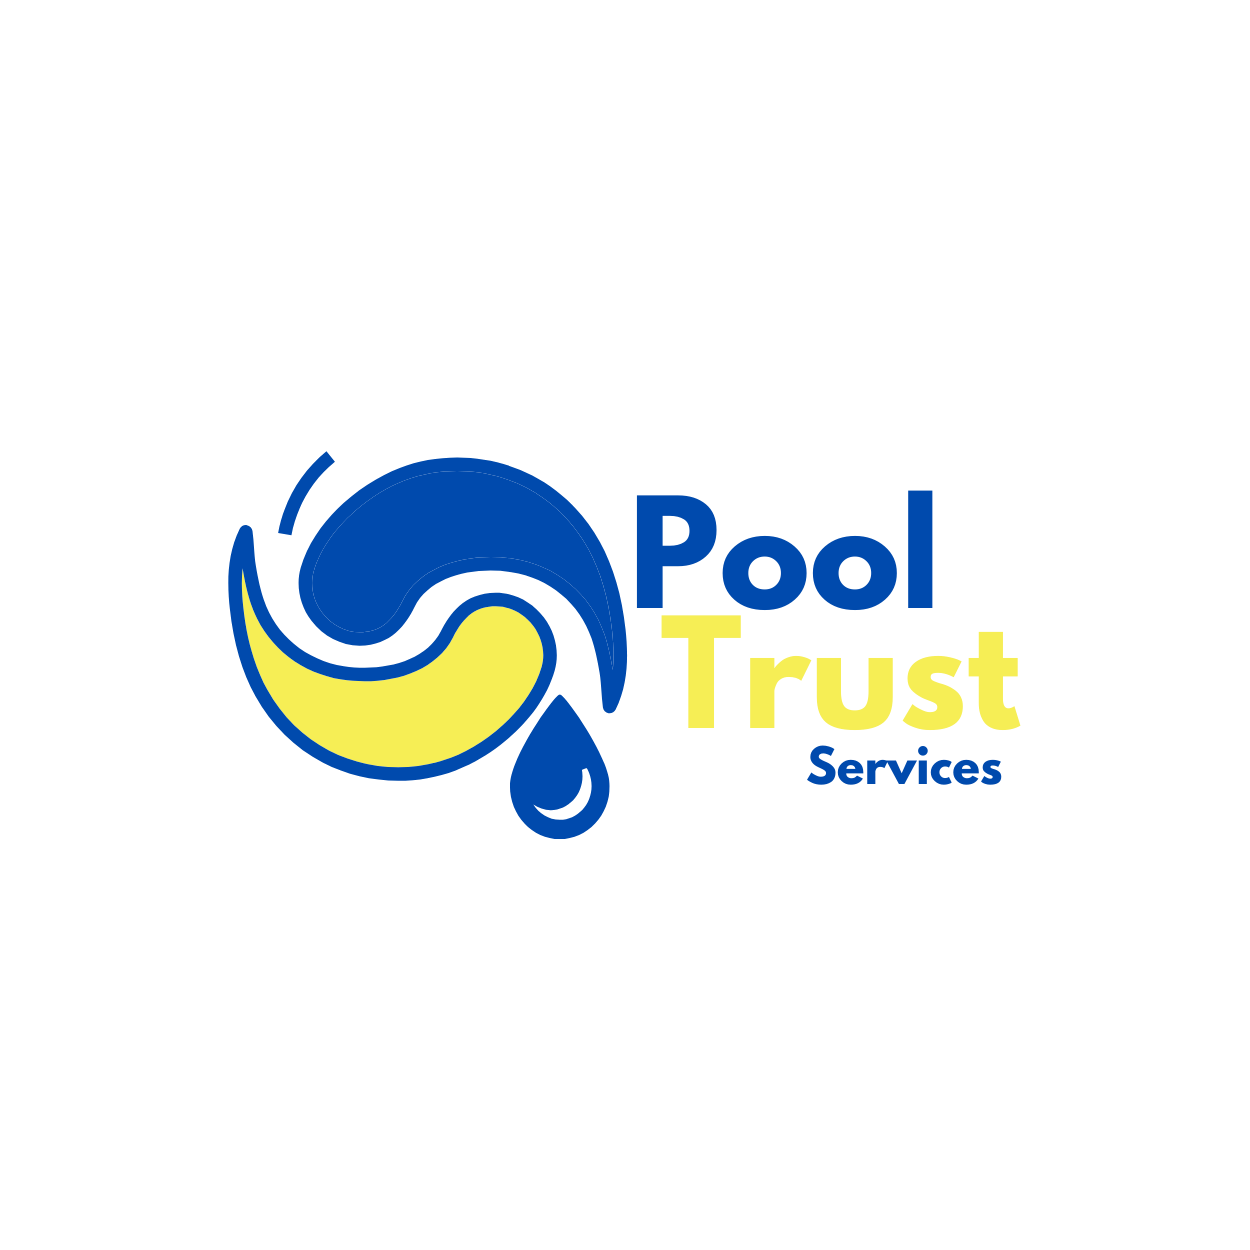 Pool Trust